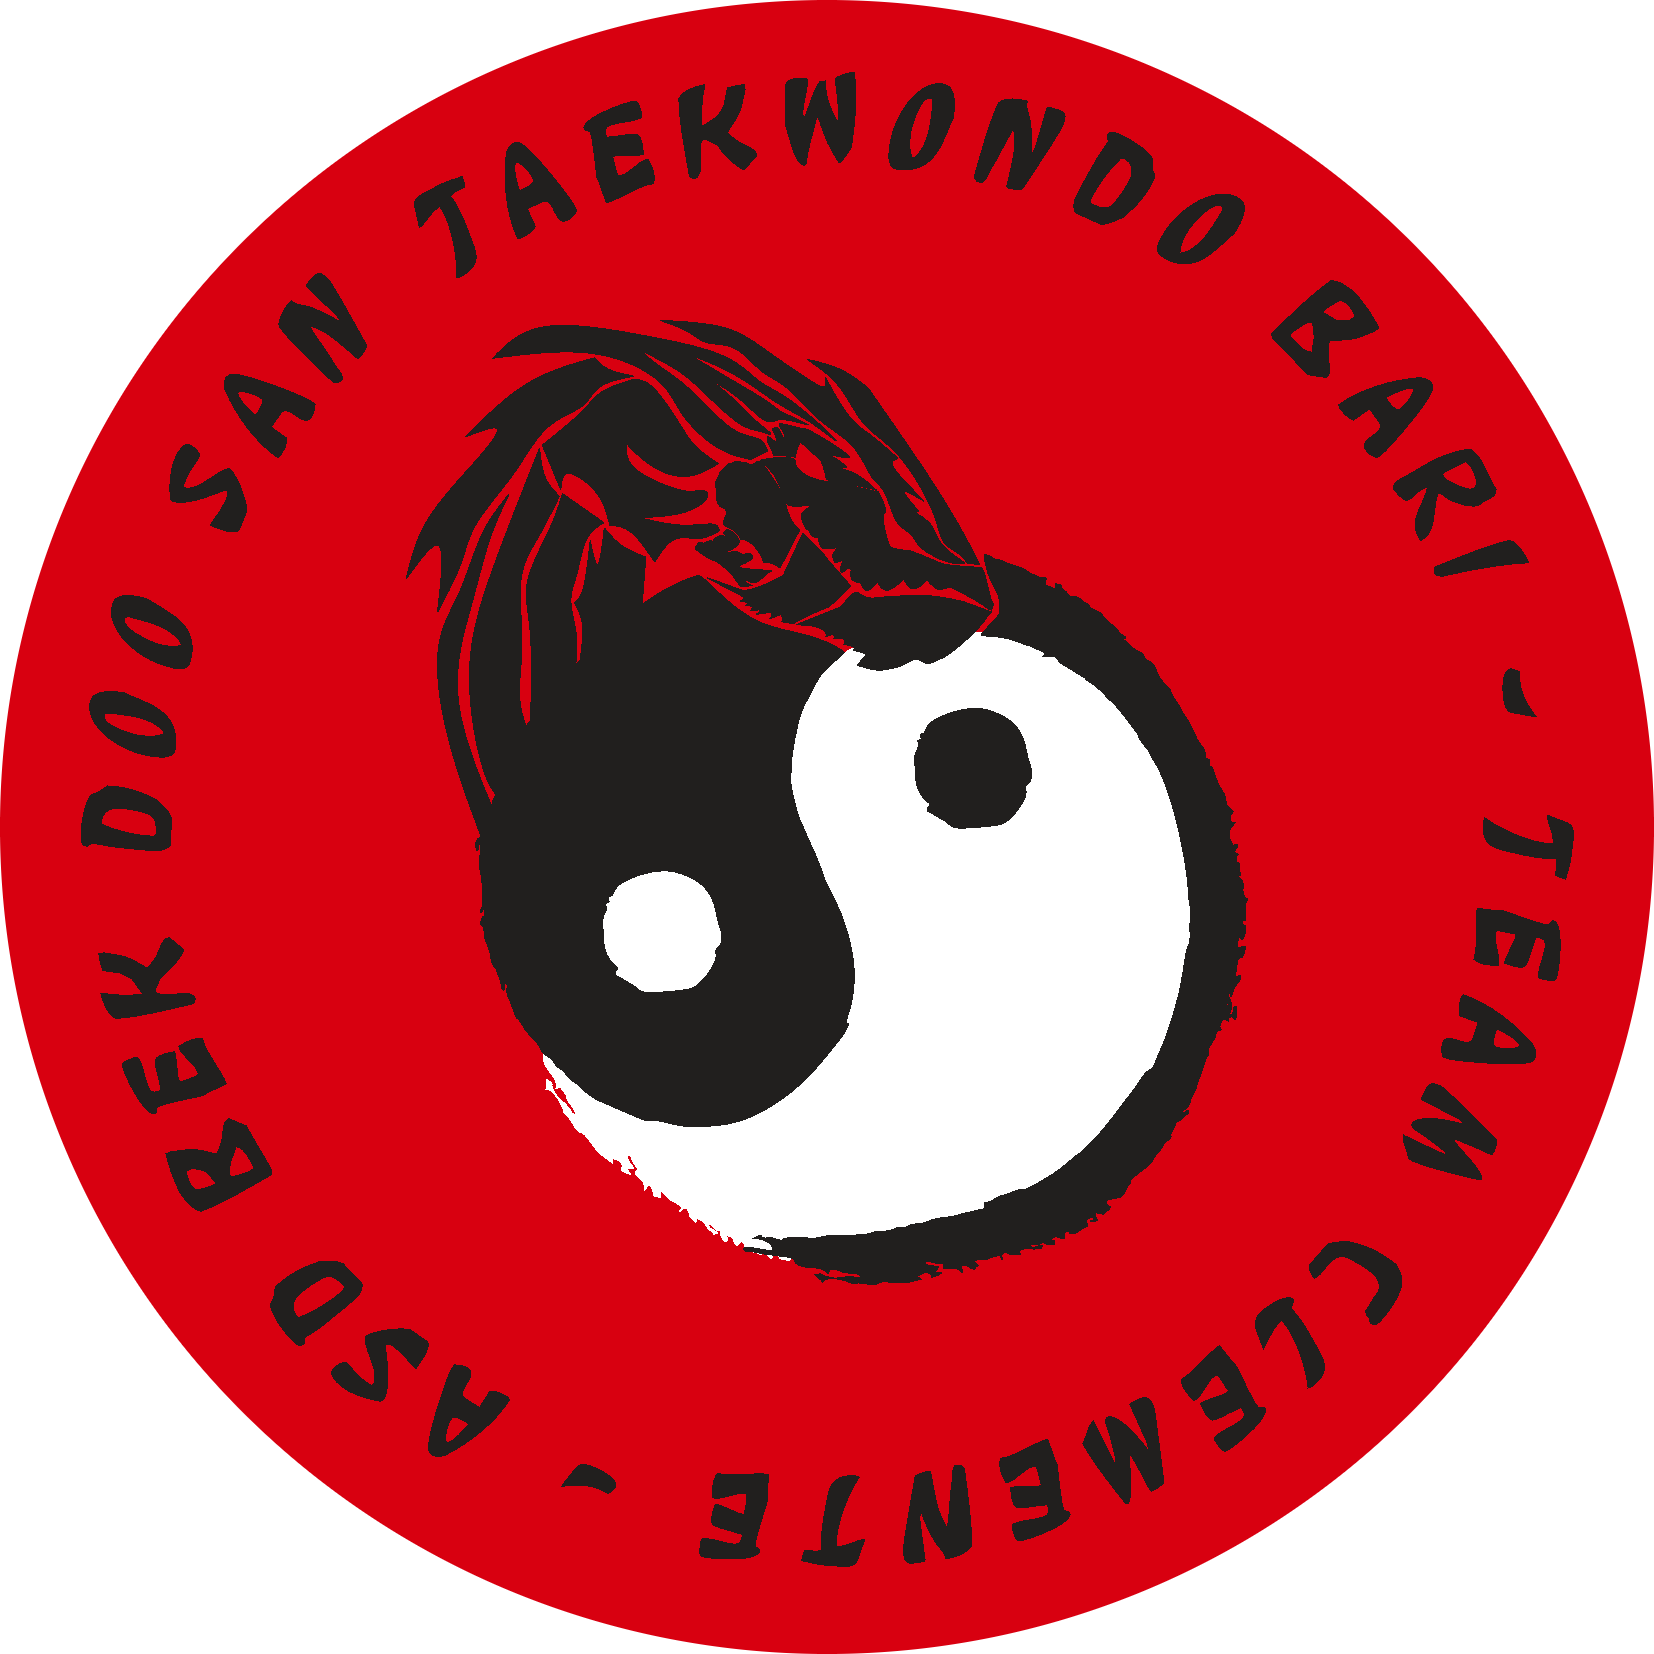 Taekwondo Bari Bek Doo San Team Clemente